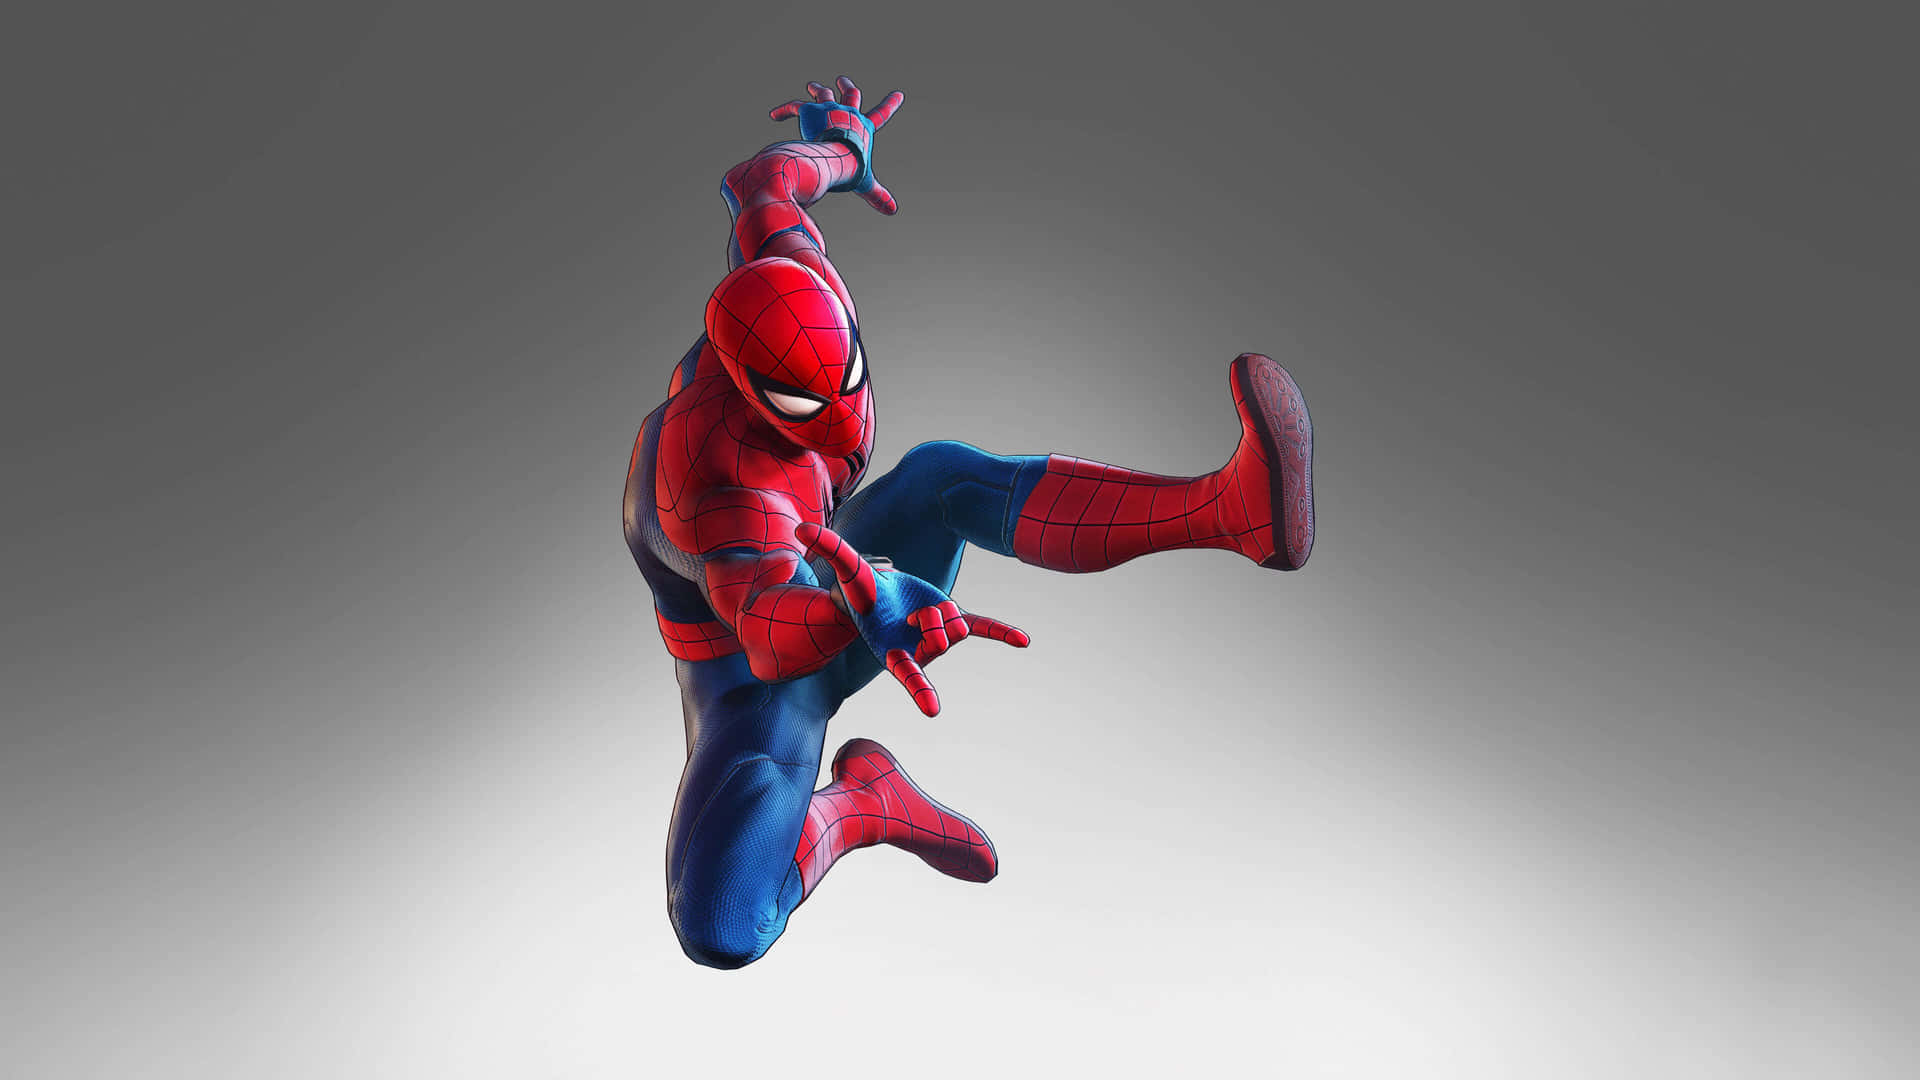 Spiderman Springt In Der Luft. Wallpaper